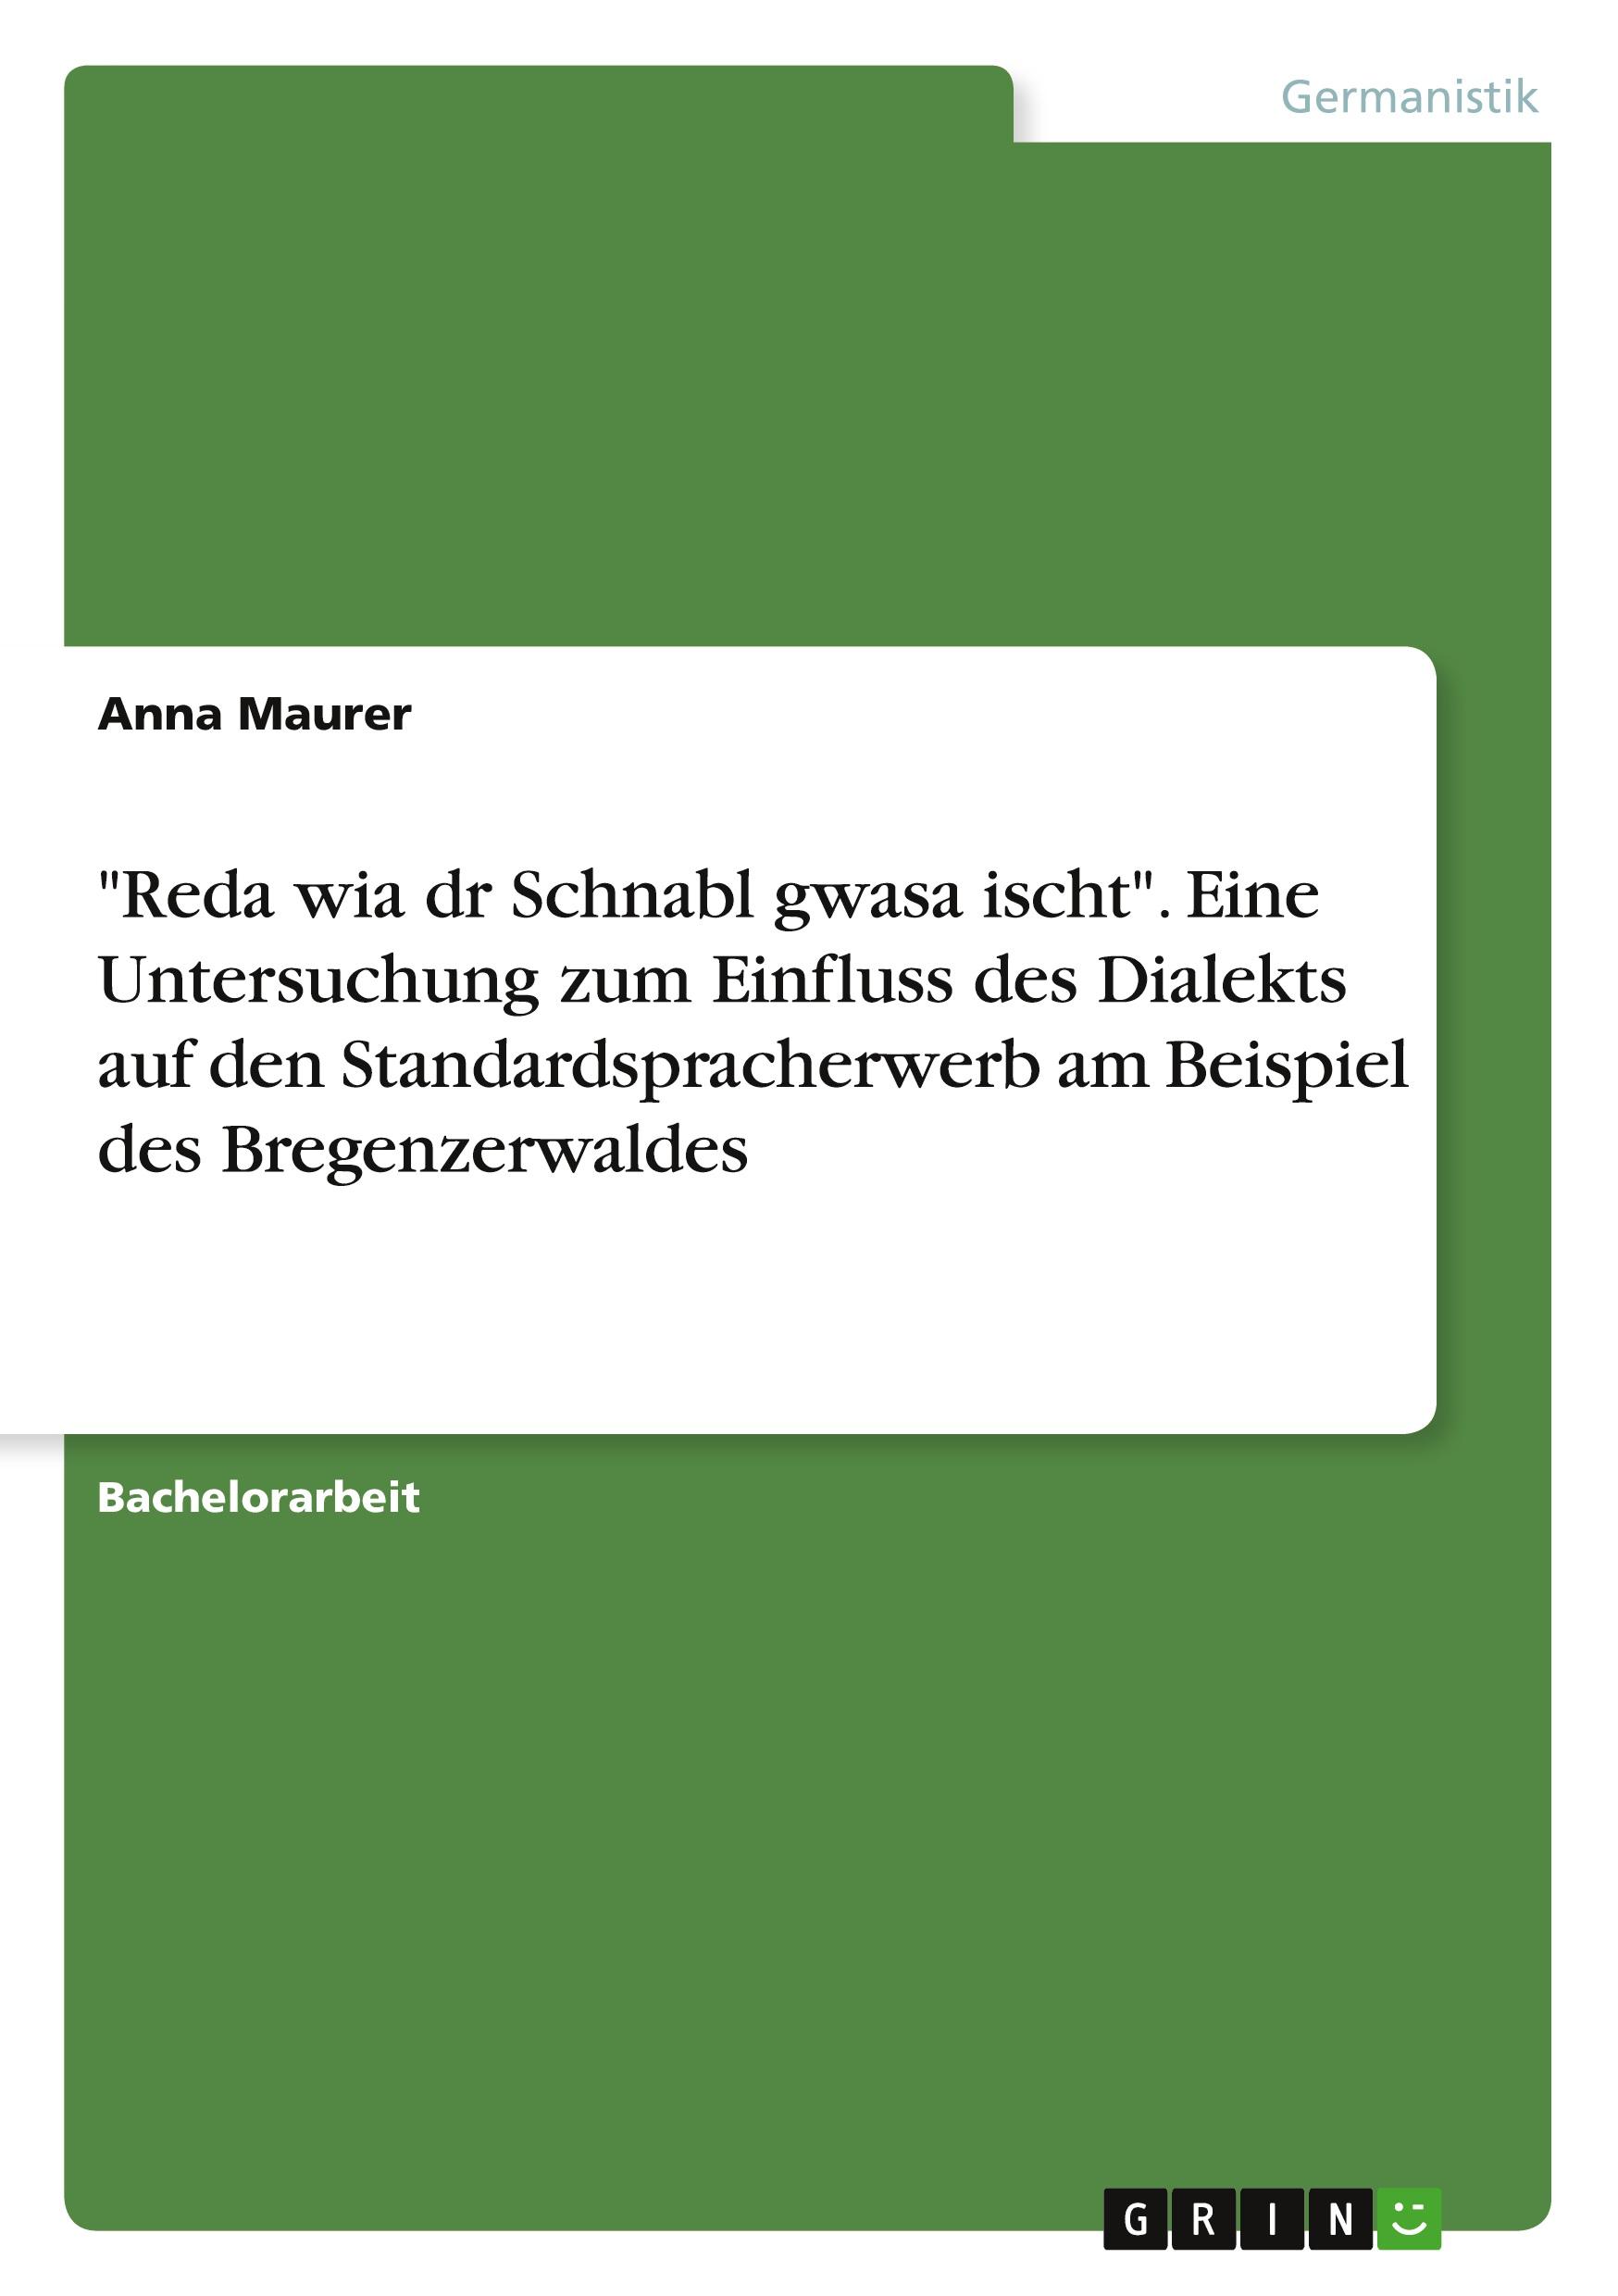 "Reda wia dr Schnabl gwasa ischt". Eine Untersuchung zum Einfluss des Dialekts auf den Standardspracherwerb am Beispiel des Bregenzerwaldes